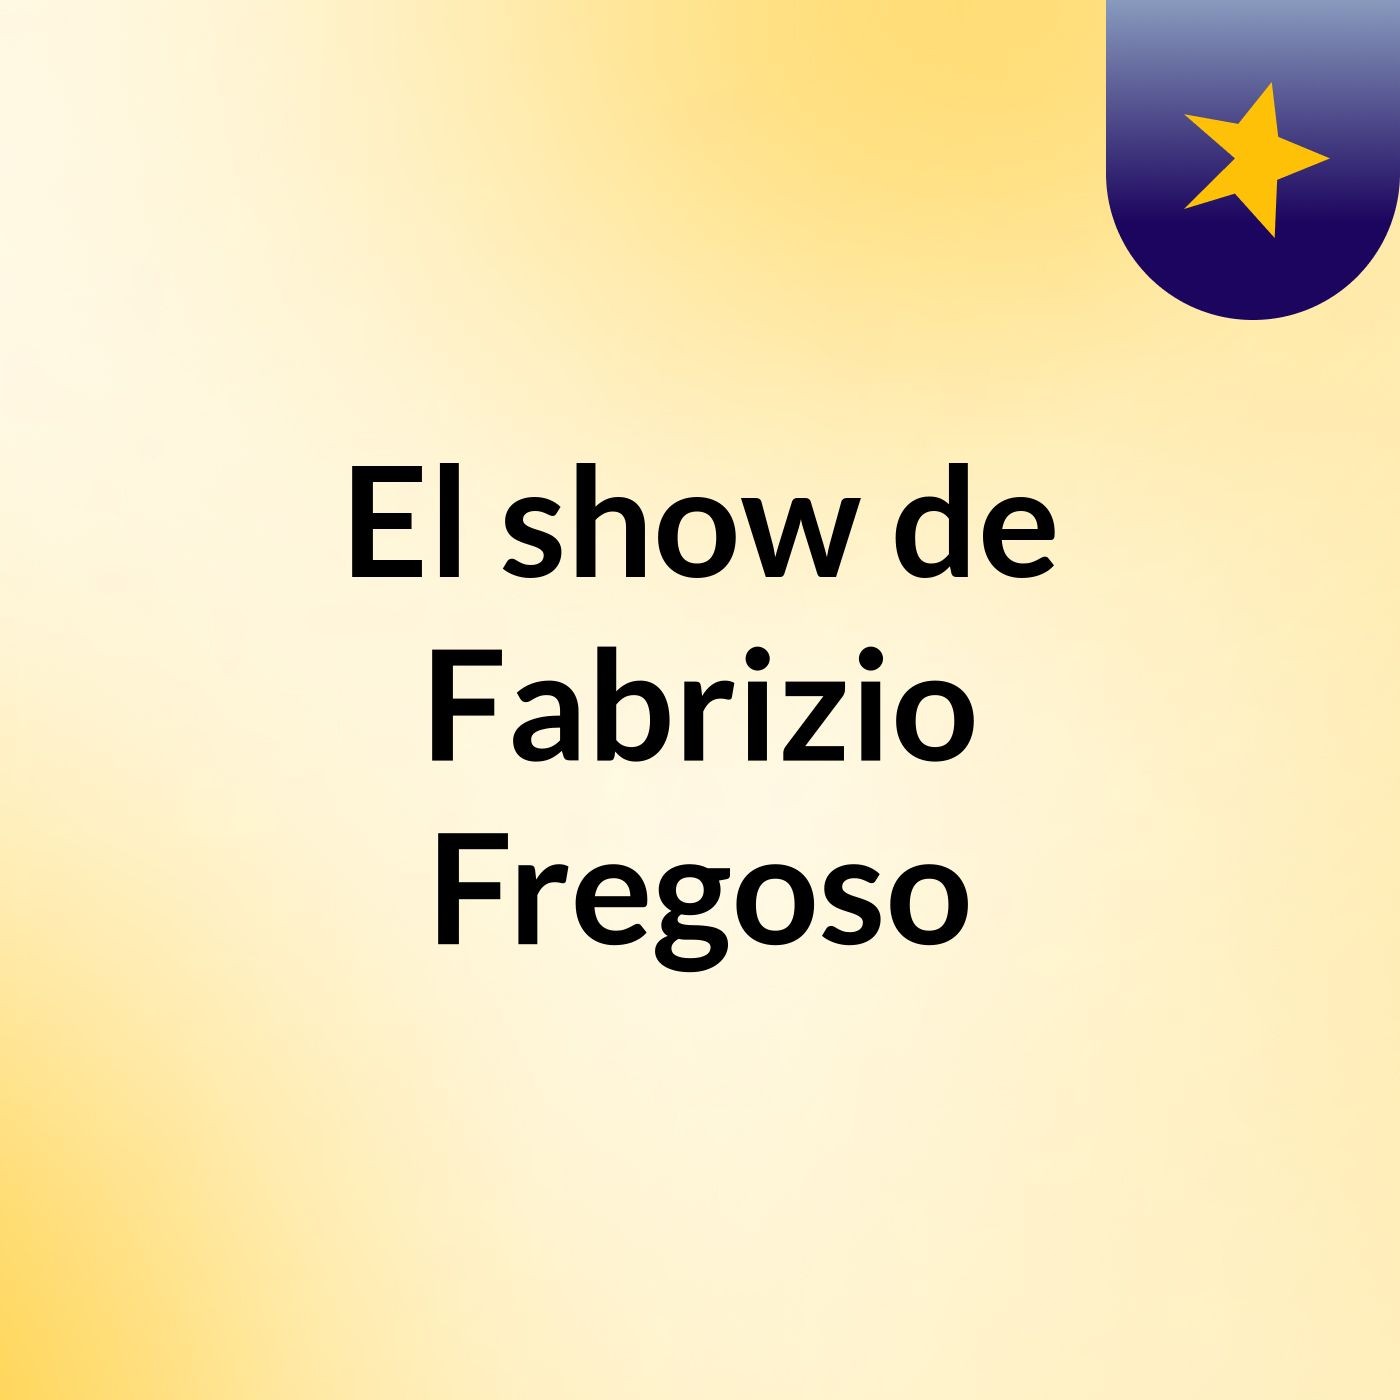 Episodio 2 - El show de Fabrizio Fregoso